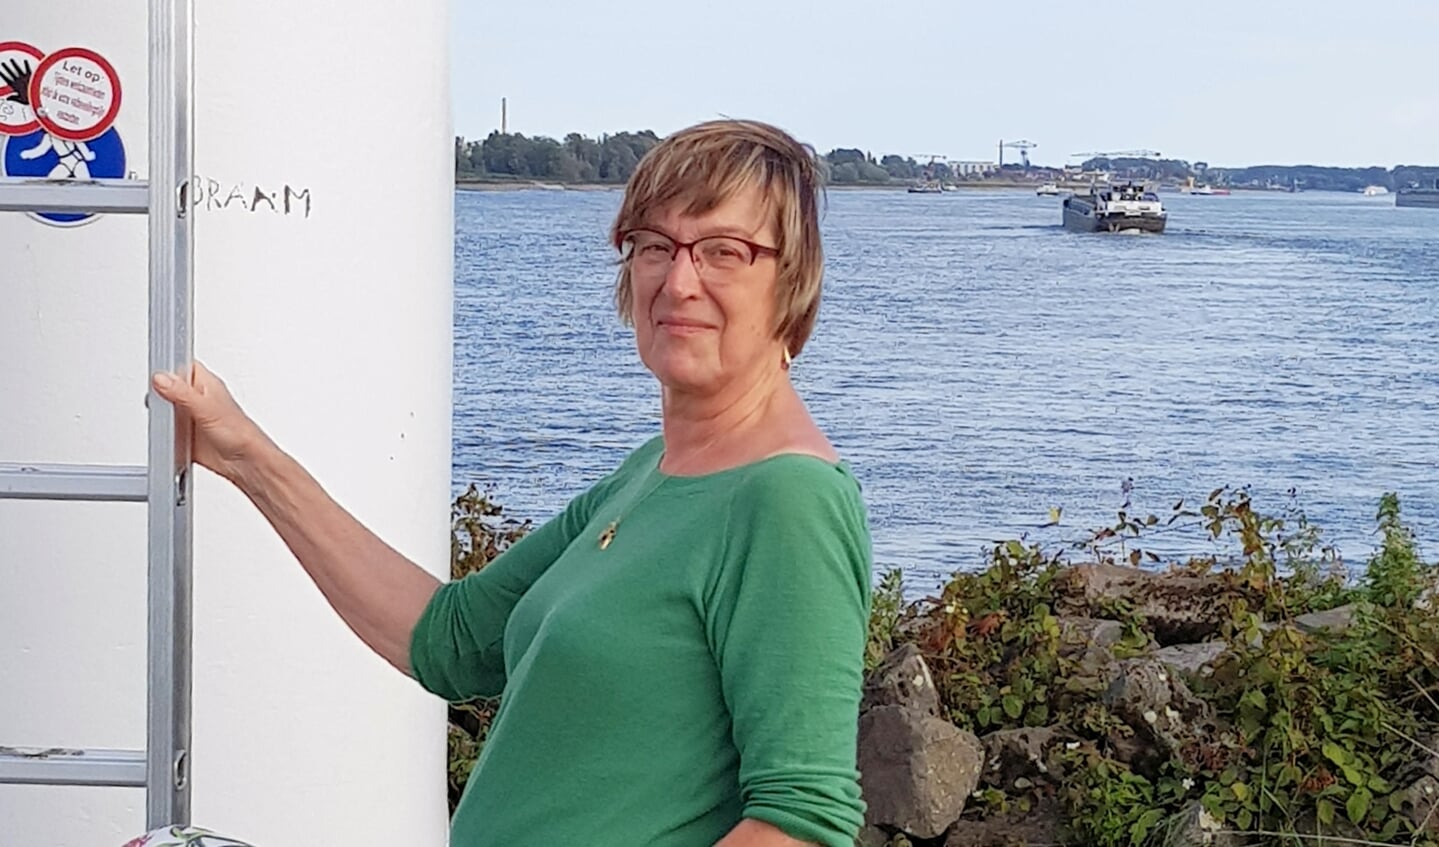 ir. Arja Span (Ede), vierde op de AWP-kandidatenlijst voor de Waterschapsverkiezingen op 20 maart 2019 bij waterschap Vallei en Veluwe.  Arja is het gezicht voor het zuidelijk deel van het waterschapsgebied.